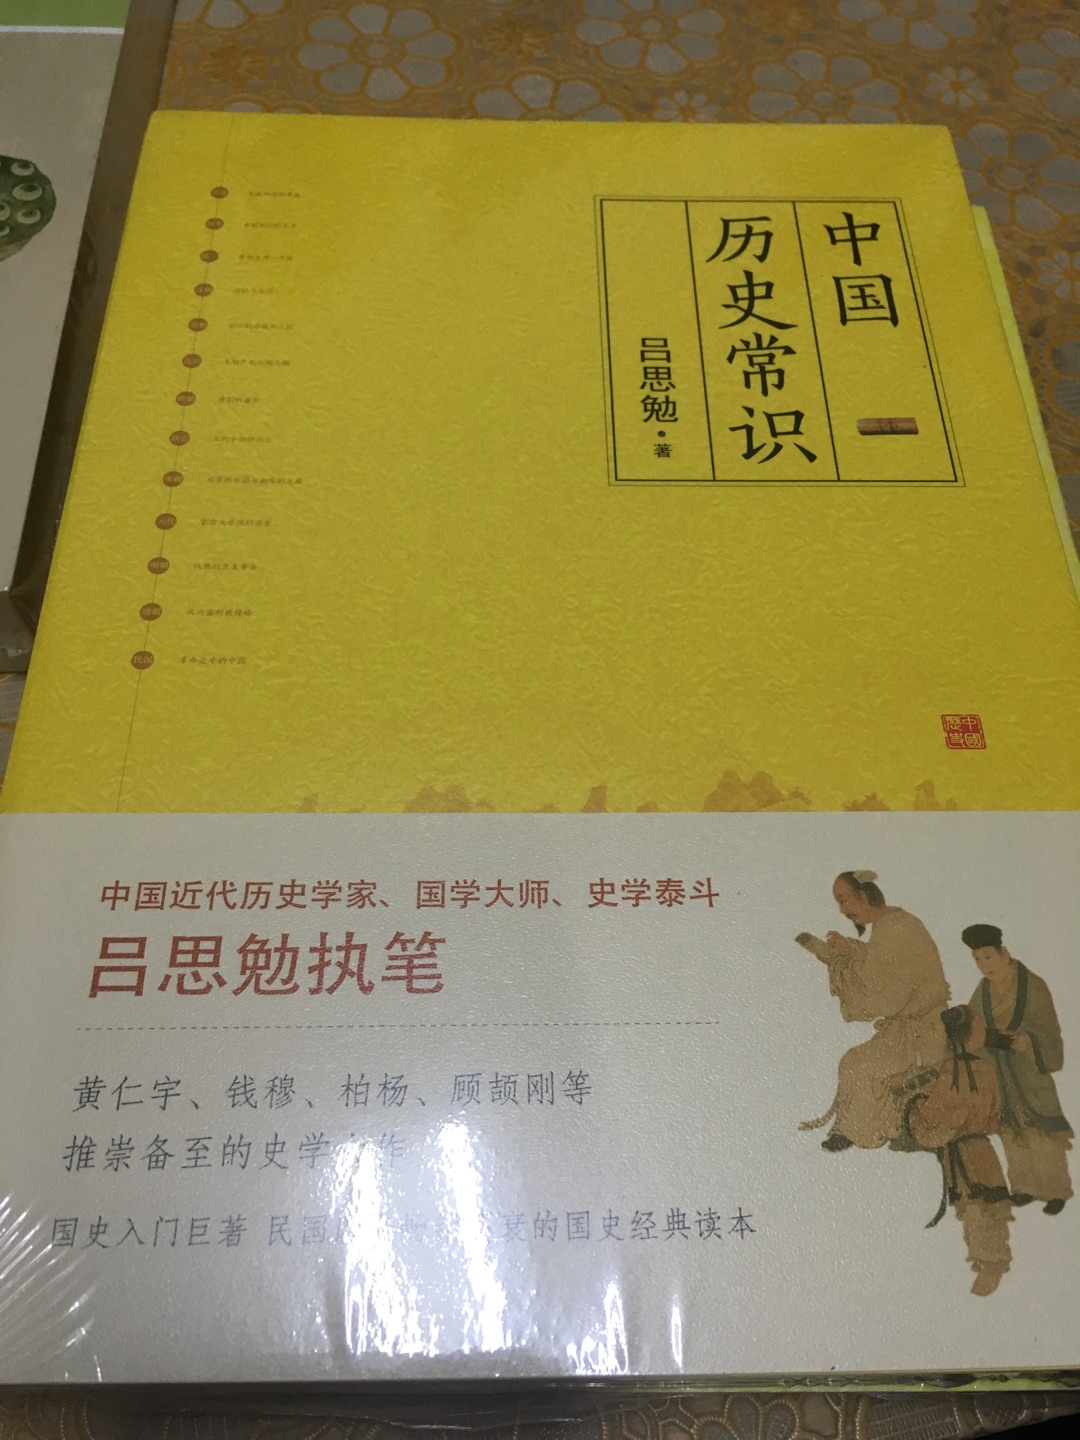 这本书挺好的，内容也很详实，中国历史常识，涵盖面还是比较广泛的！就是纸张略微偏薄了一点点！多学学历史知识对自己是有很大帮助的！